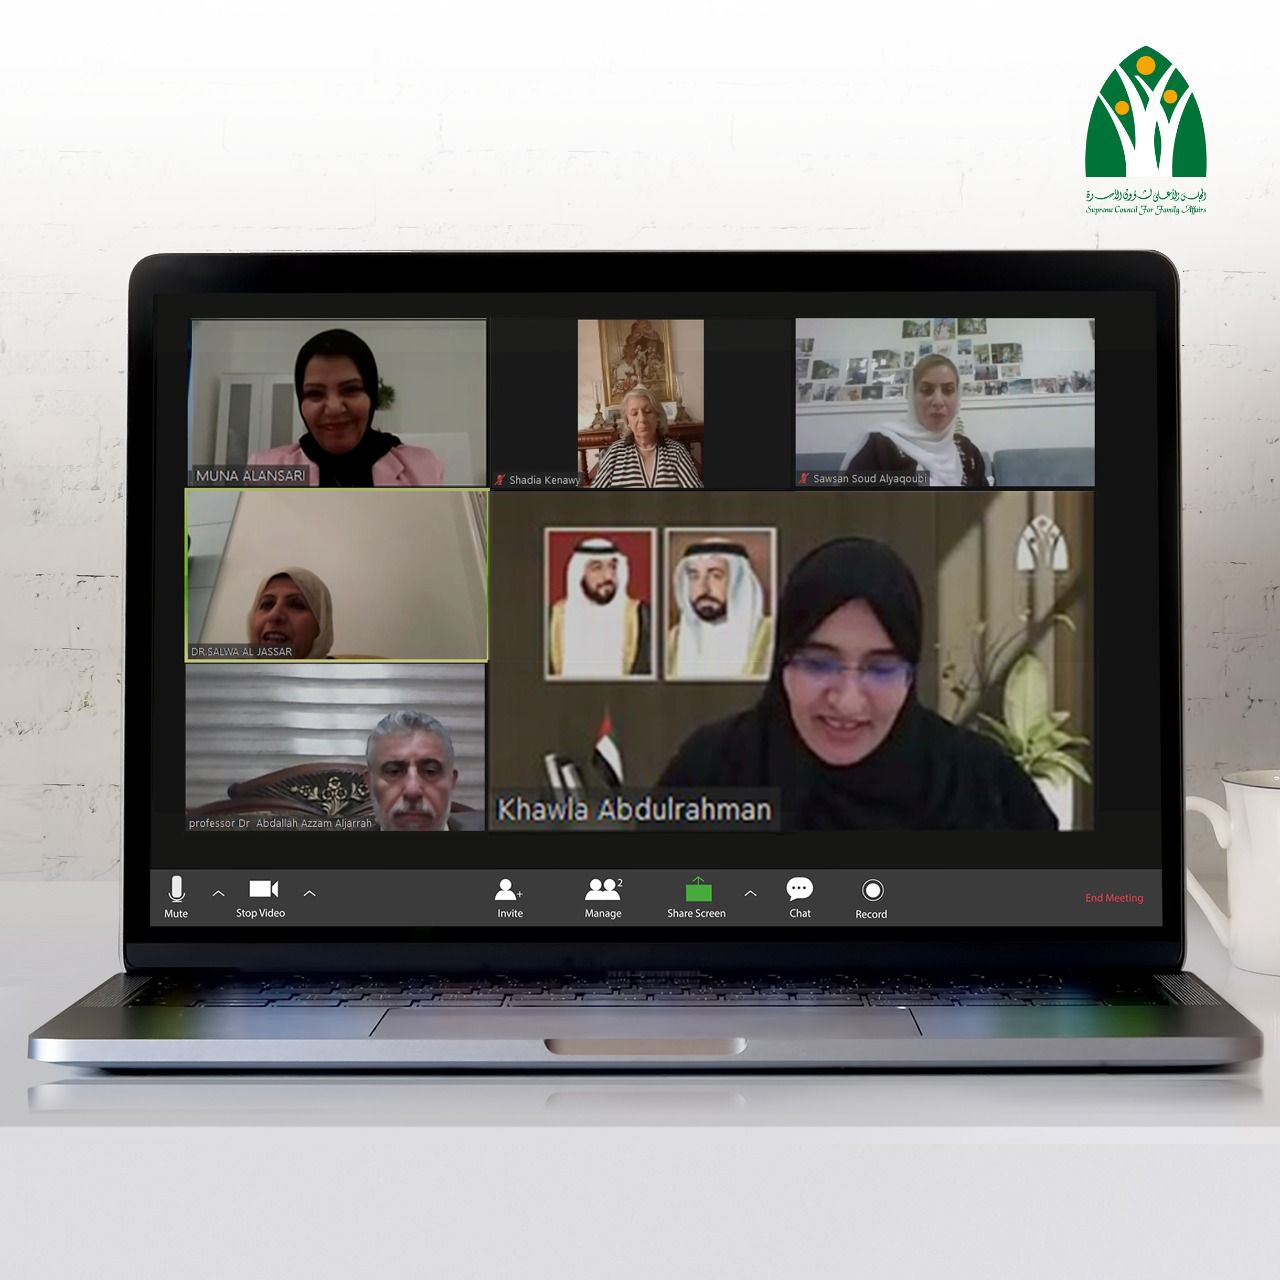  الأمانة العامة للمجلس الأعلى لشؤون الأسرة بالشارقة تستعرض تجربة الإمارات الرائدة في التعليم عن بعد في ظل الجائحة